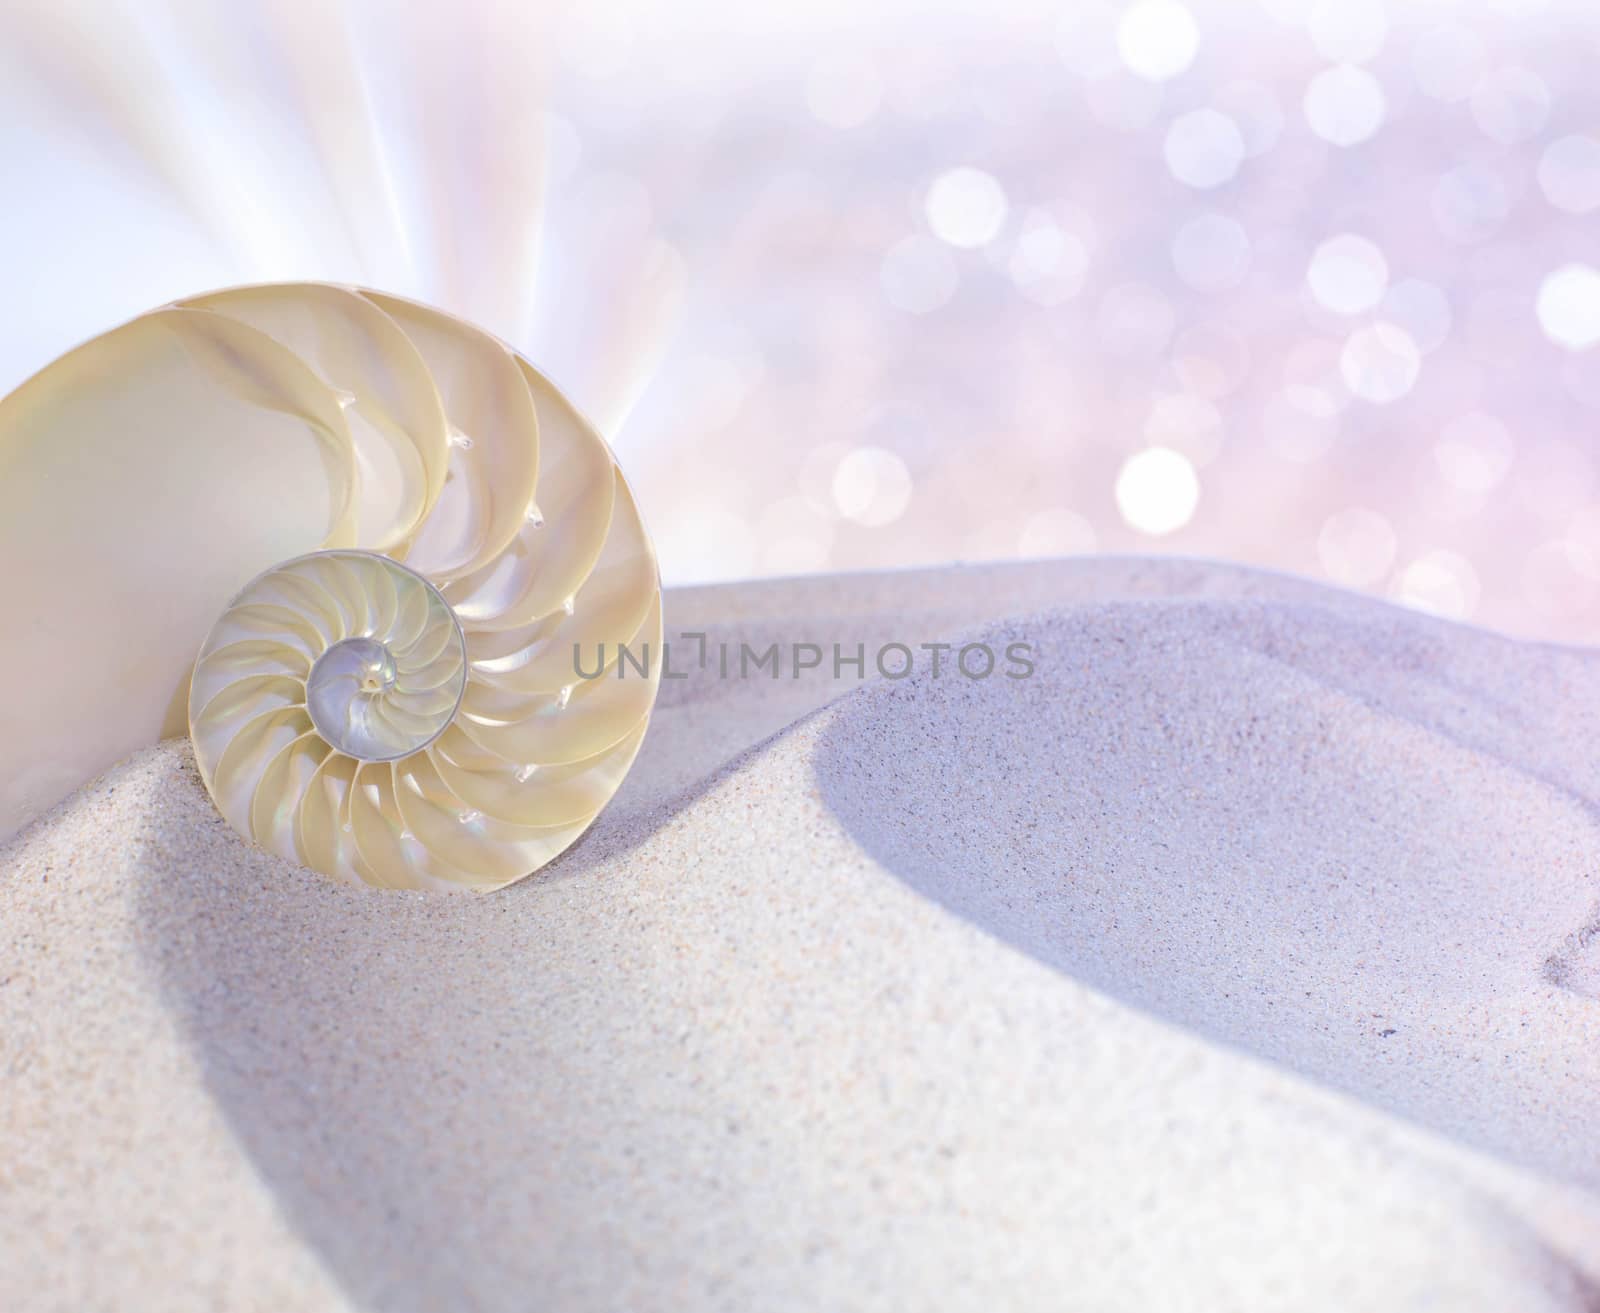 Nautilus shell cut by stellar